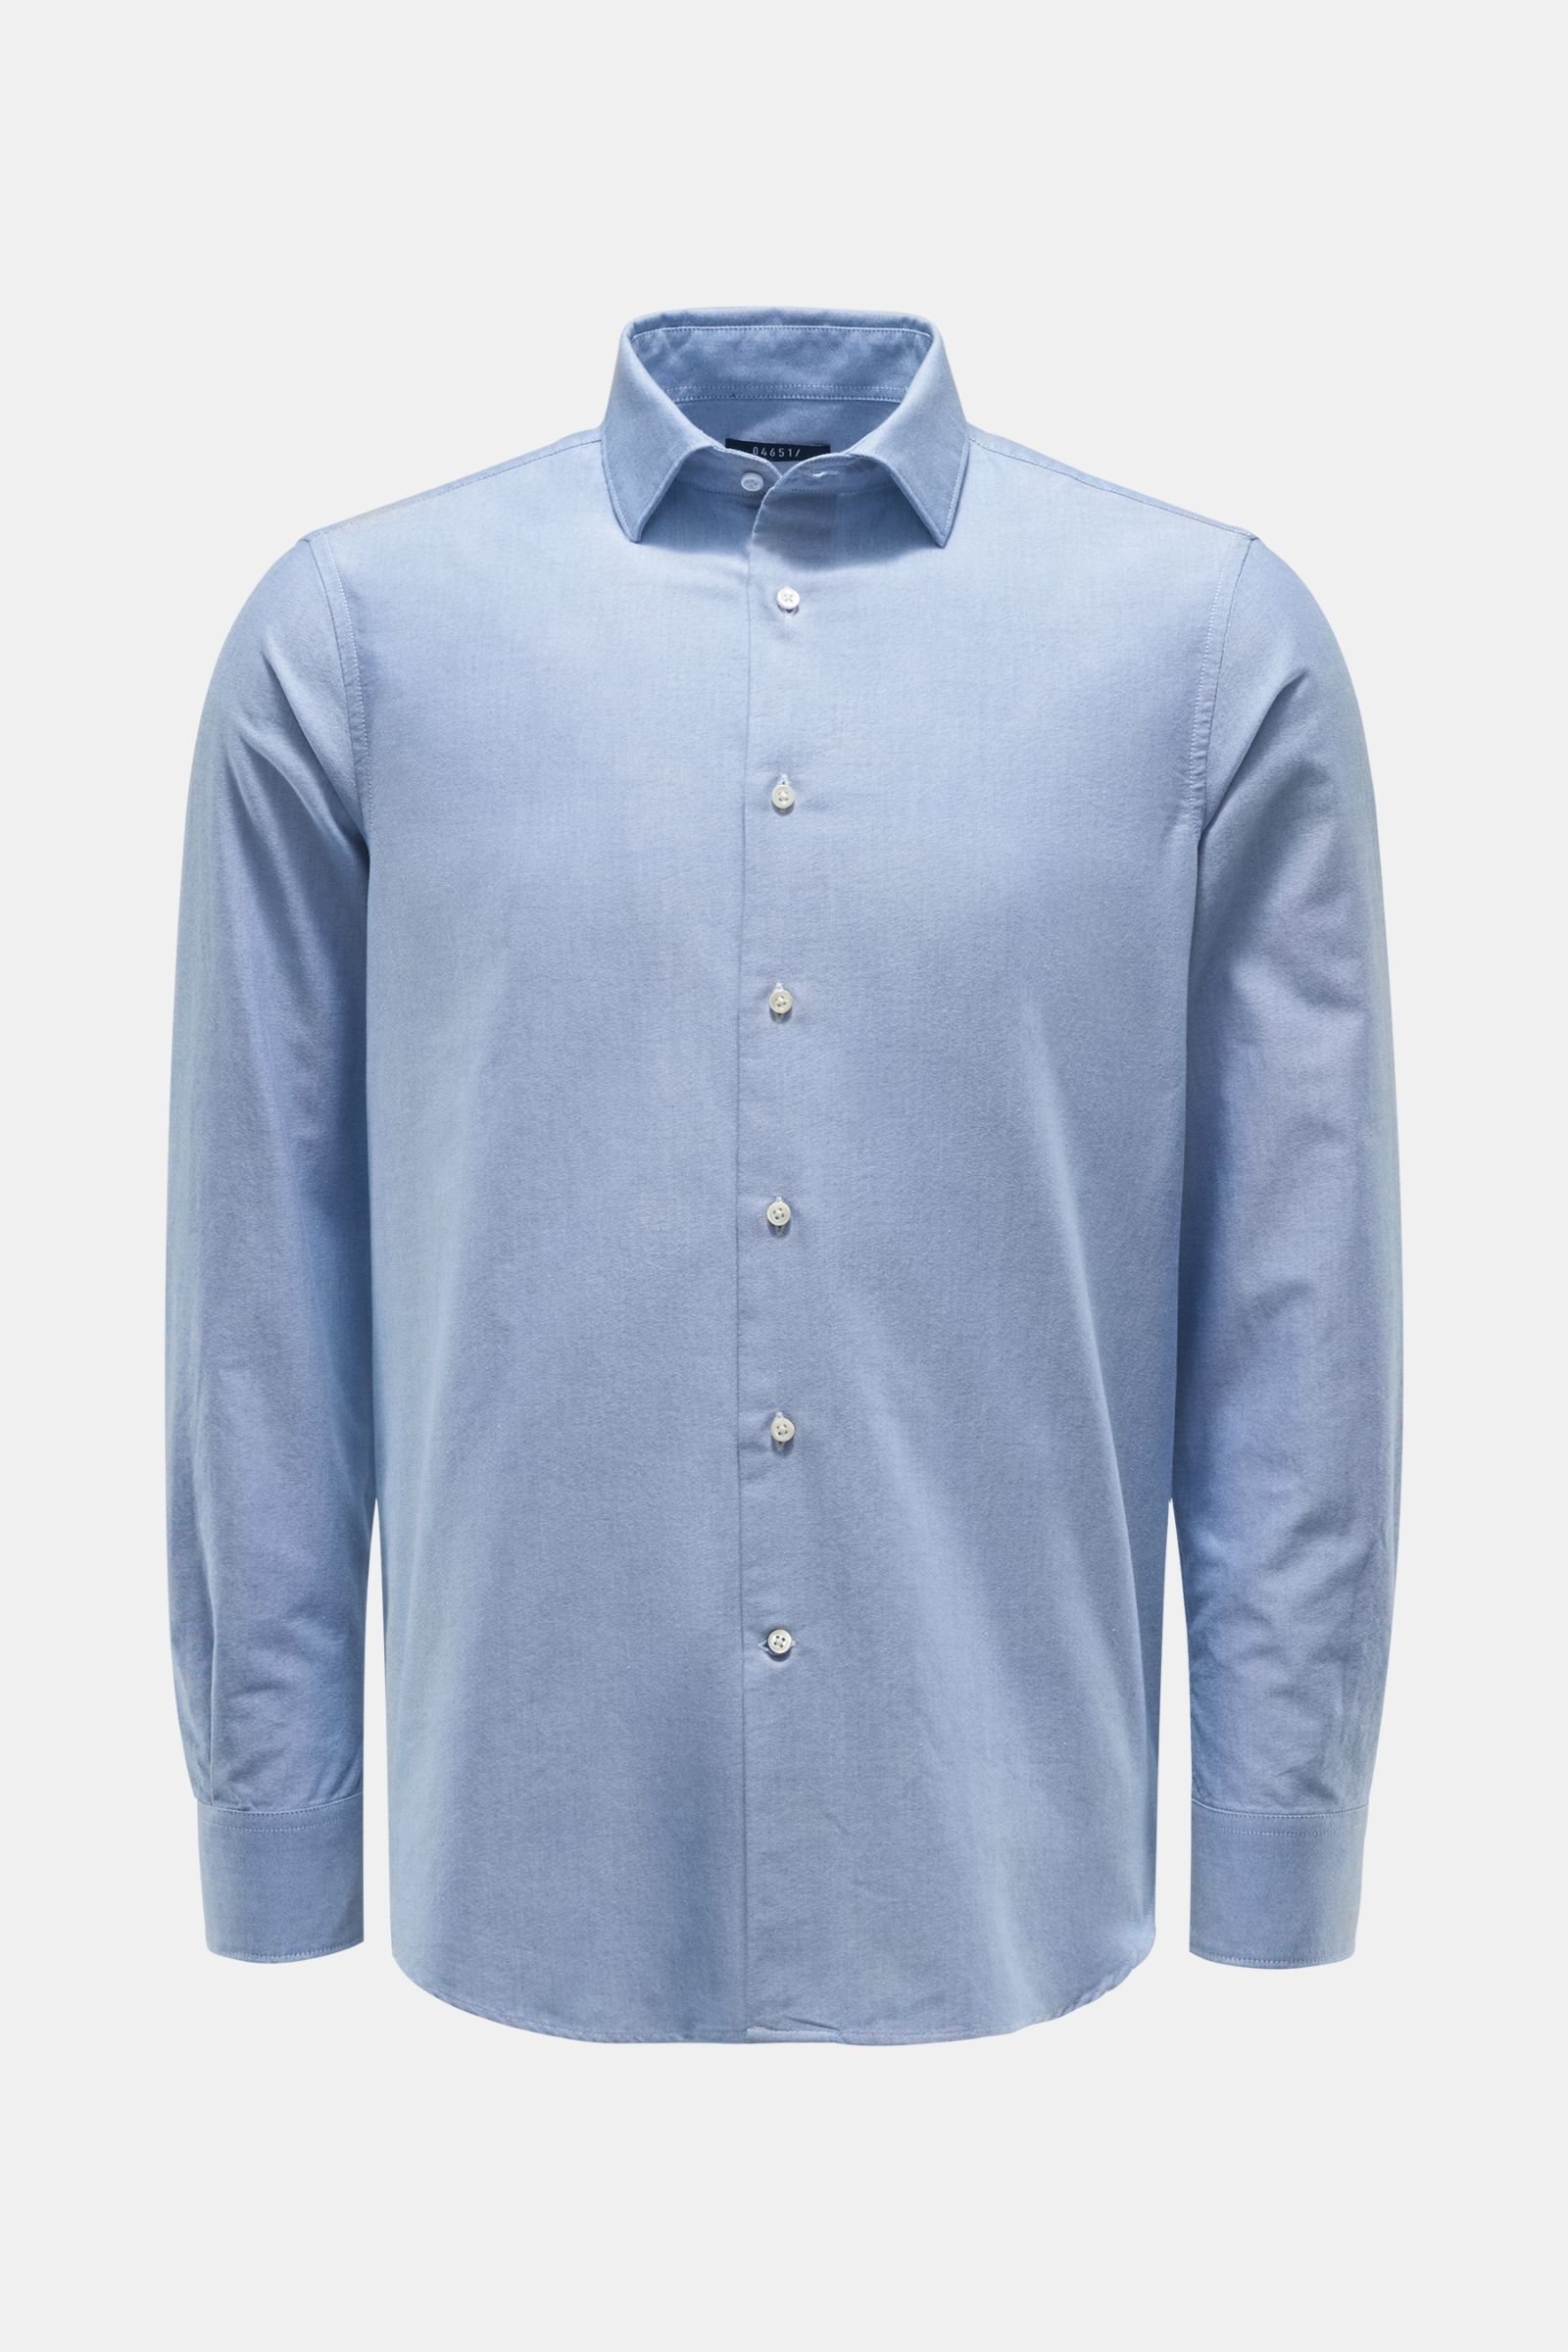 Oxford shirt Kent collar light blue